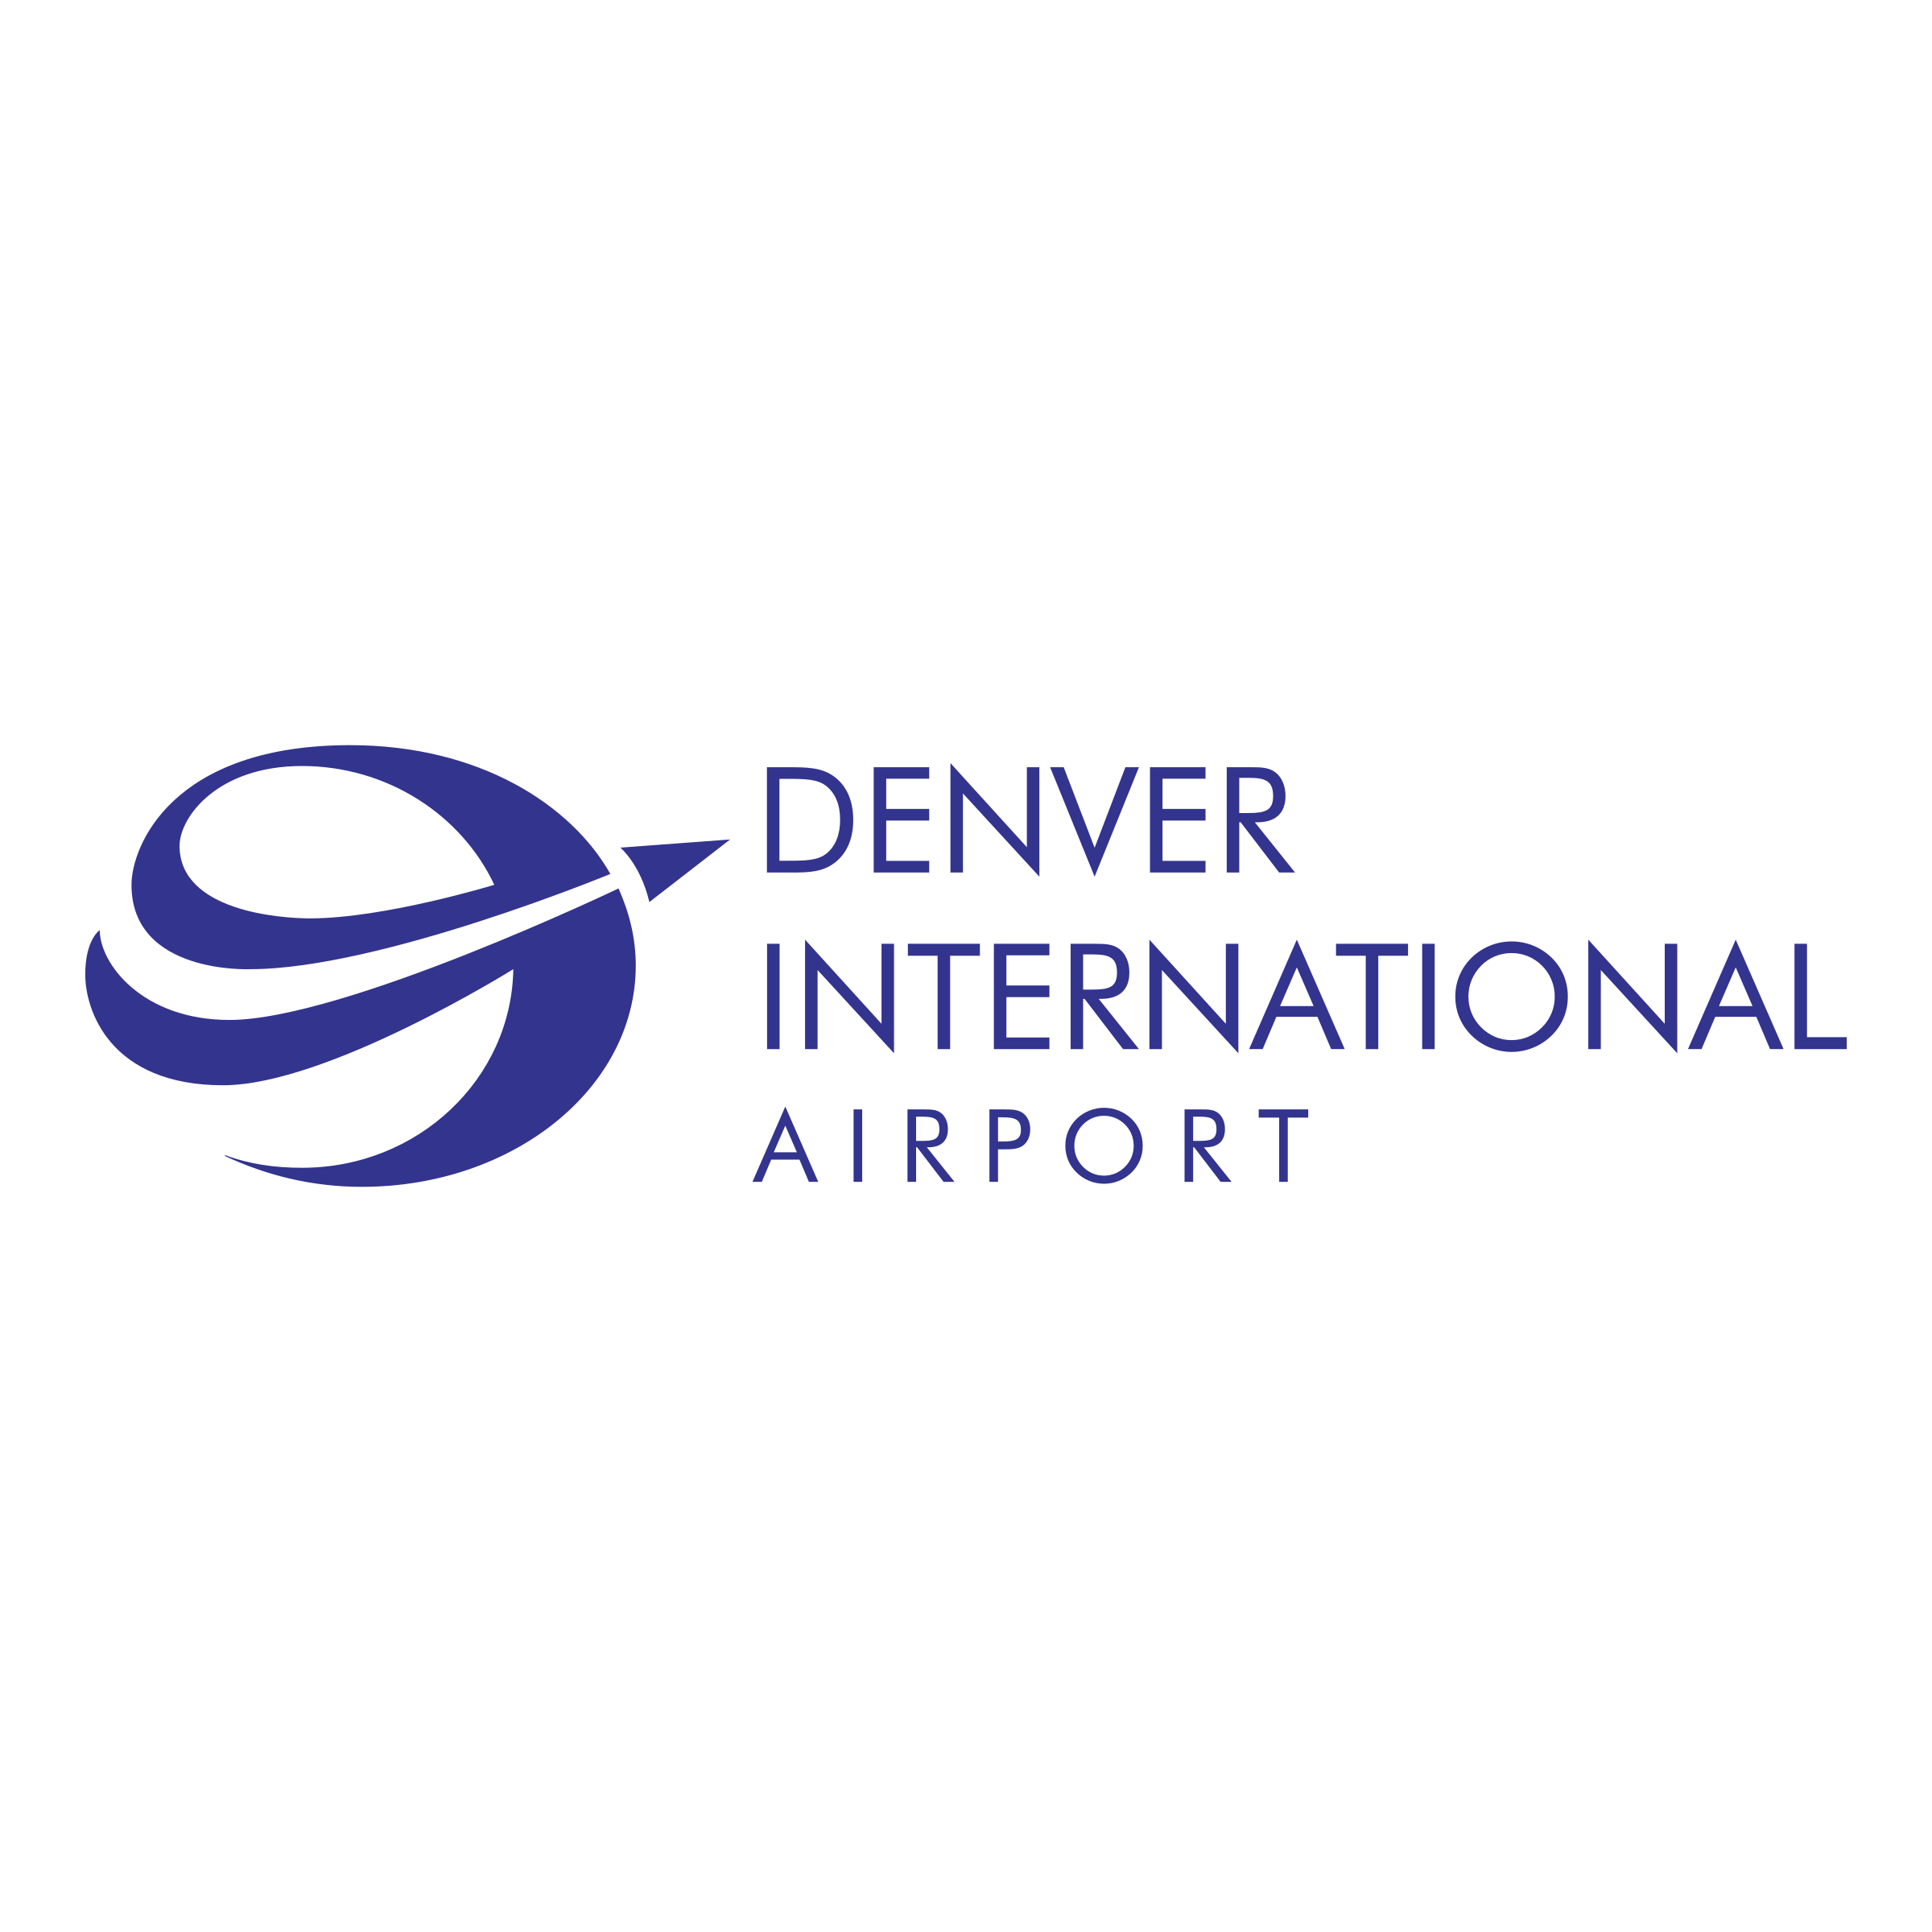 Denver International Airport Logo - Denver International Airport Logo PNG Transparent & SVG Vector ...